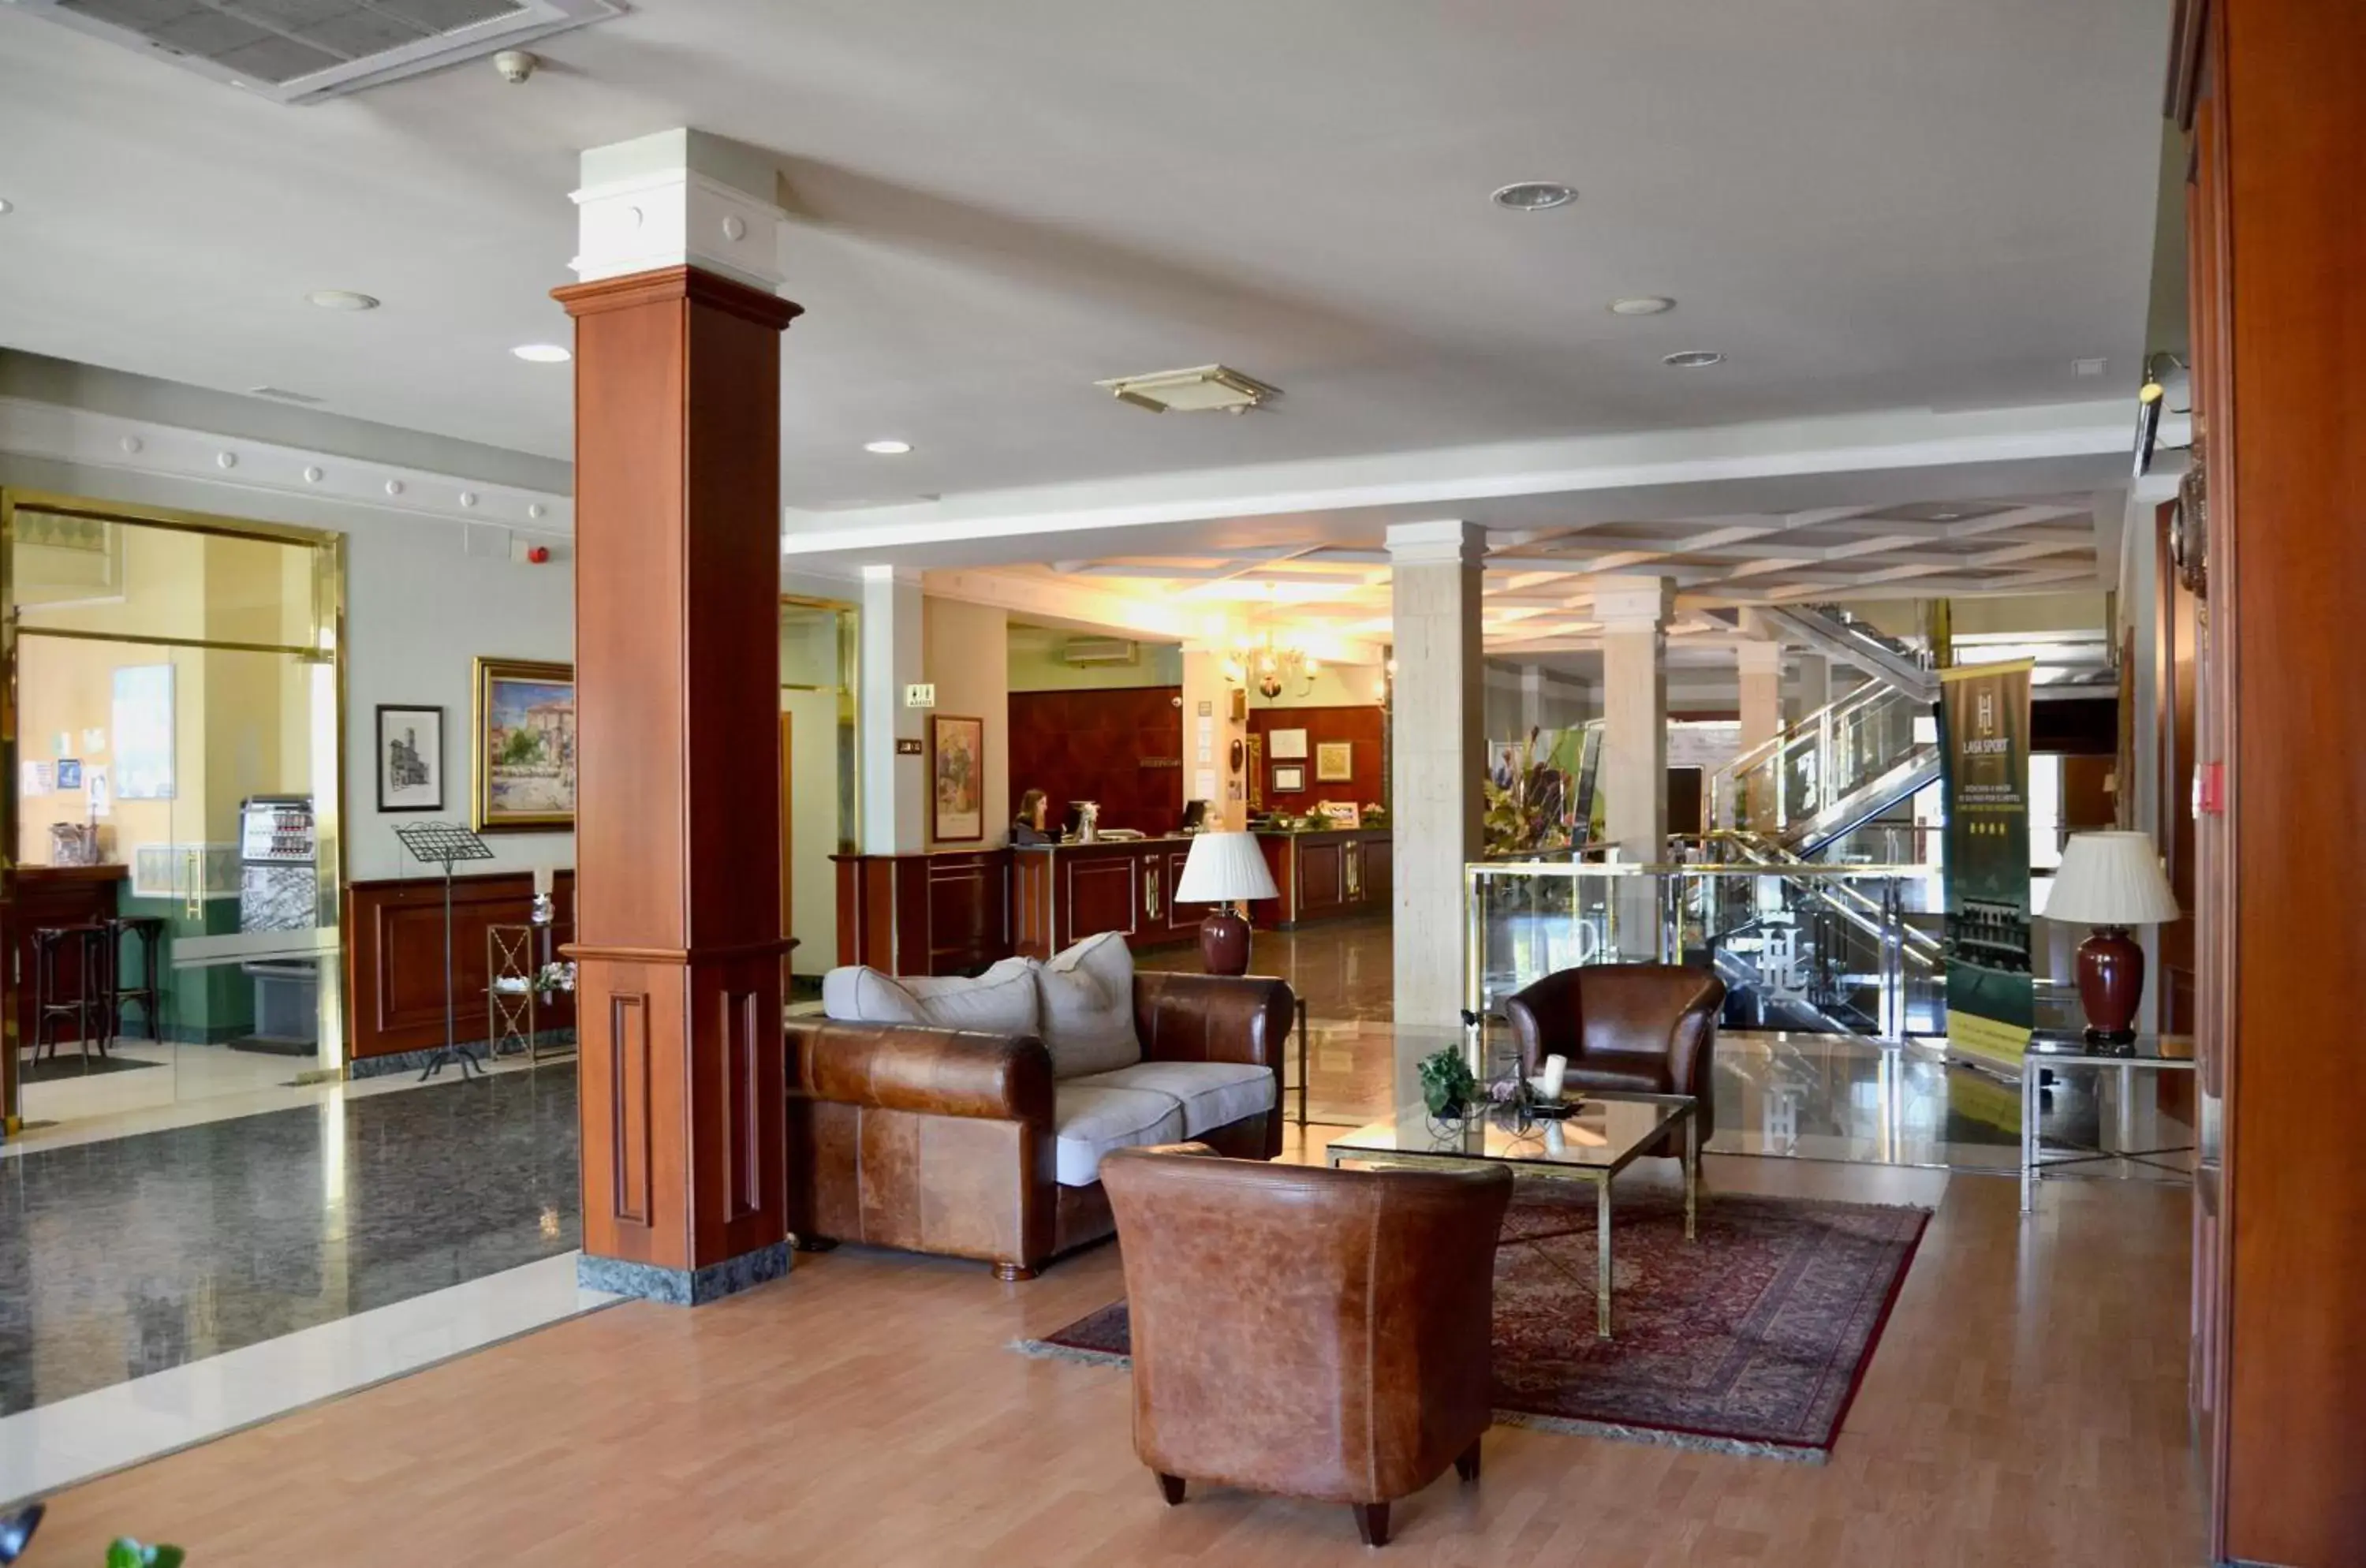 Lobby or reception, Lobby/Reception in Hotel Lasa Sport